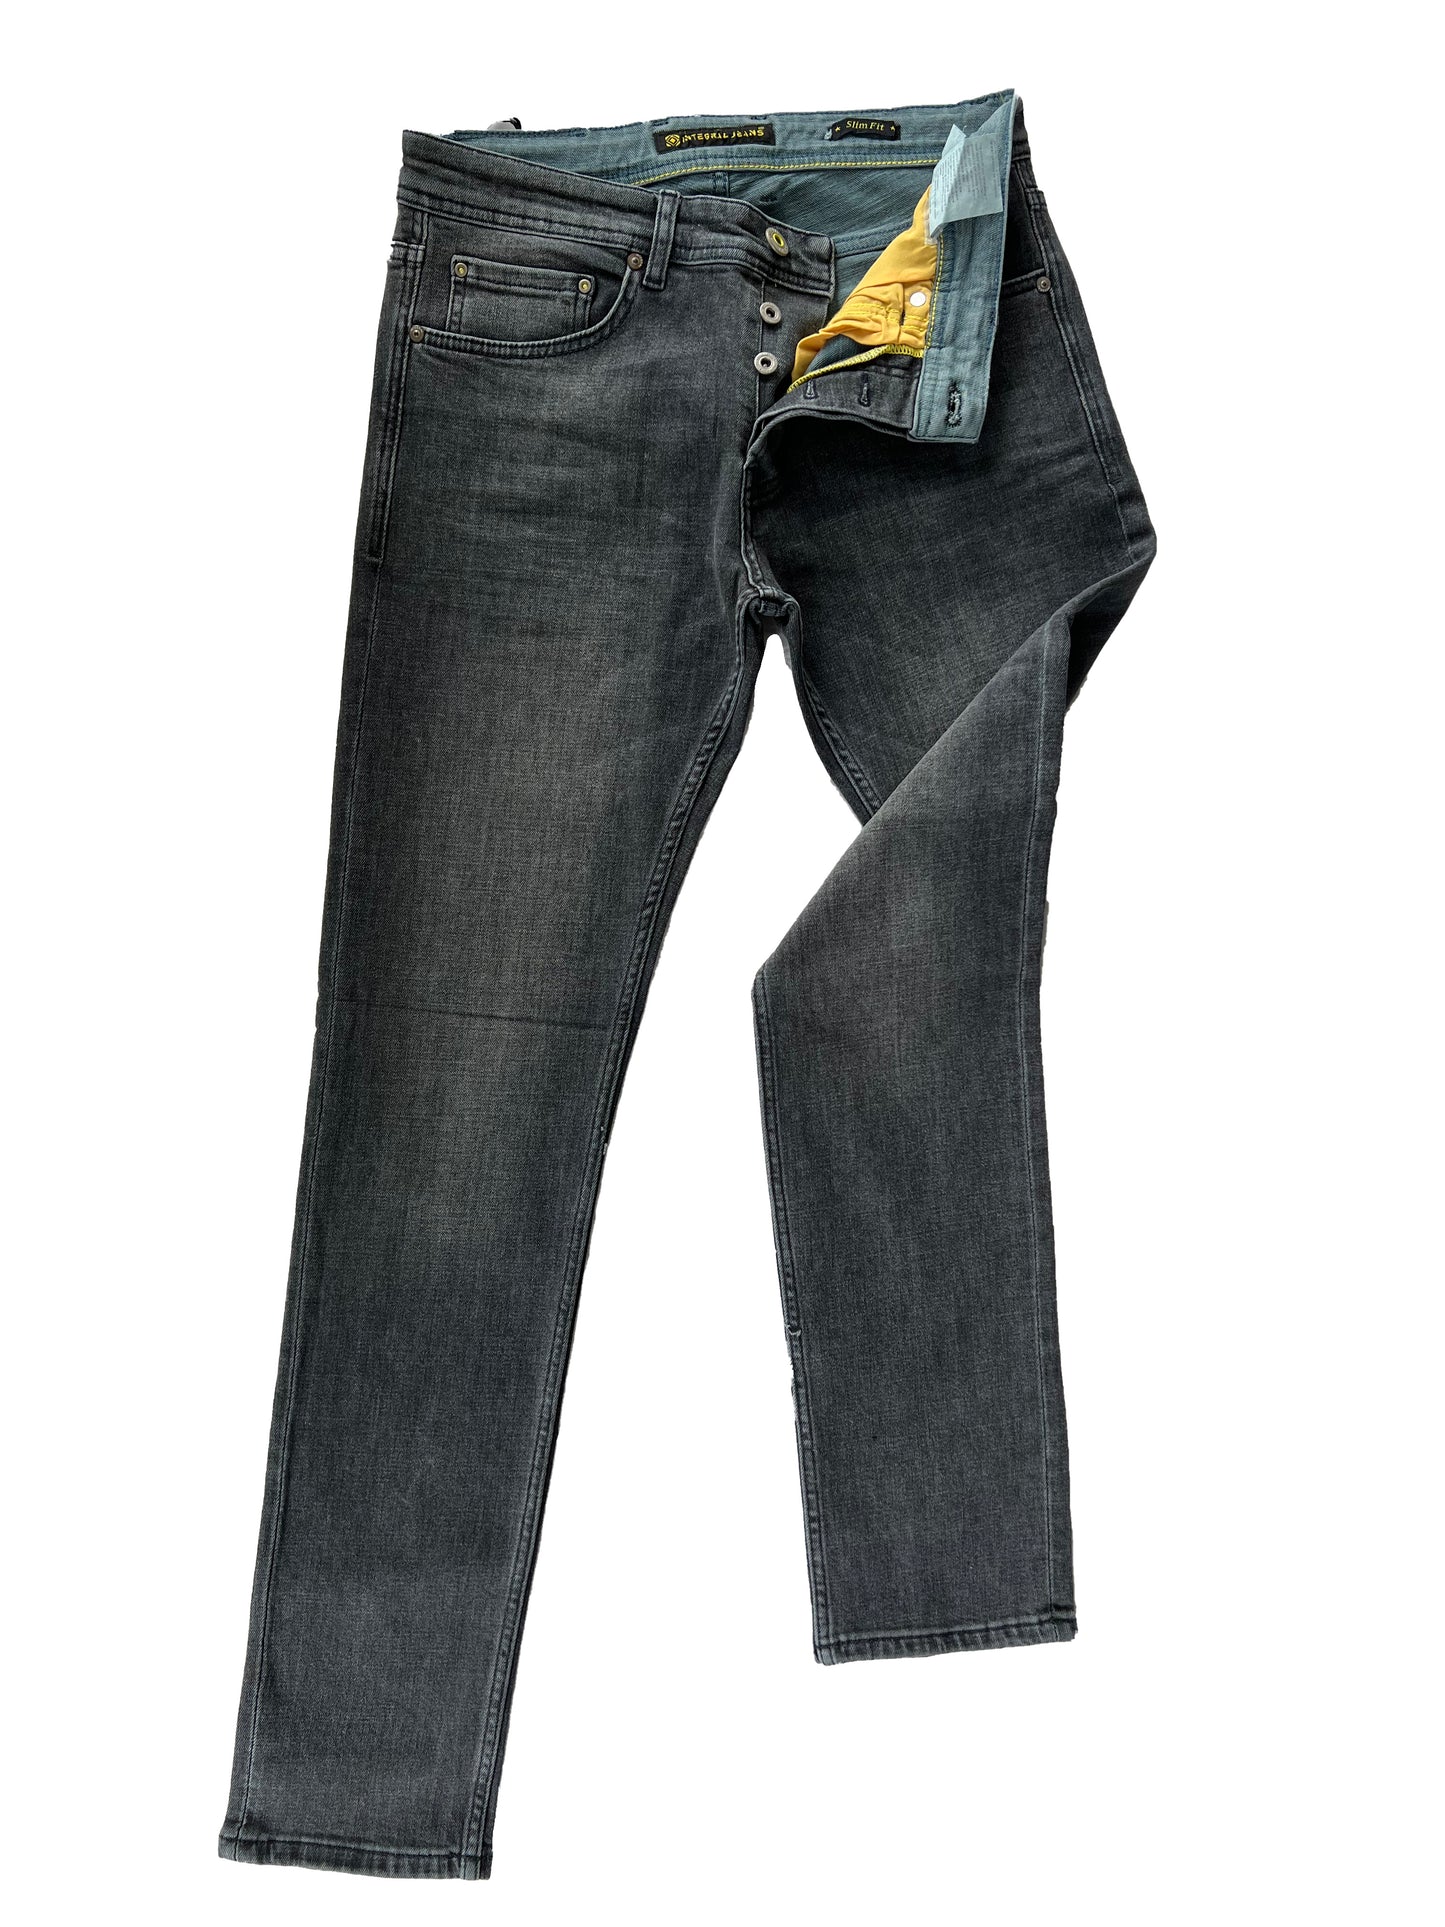 Jeans, pantalons confortables coupe slim pour hommes - Luton 